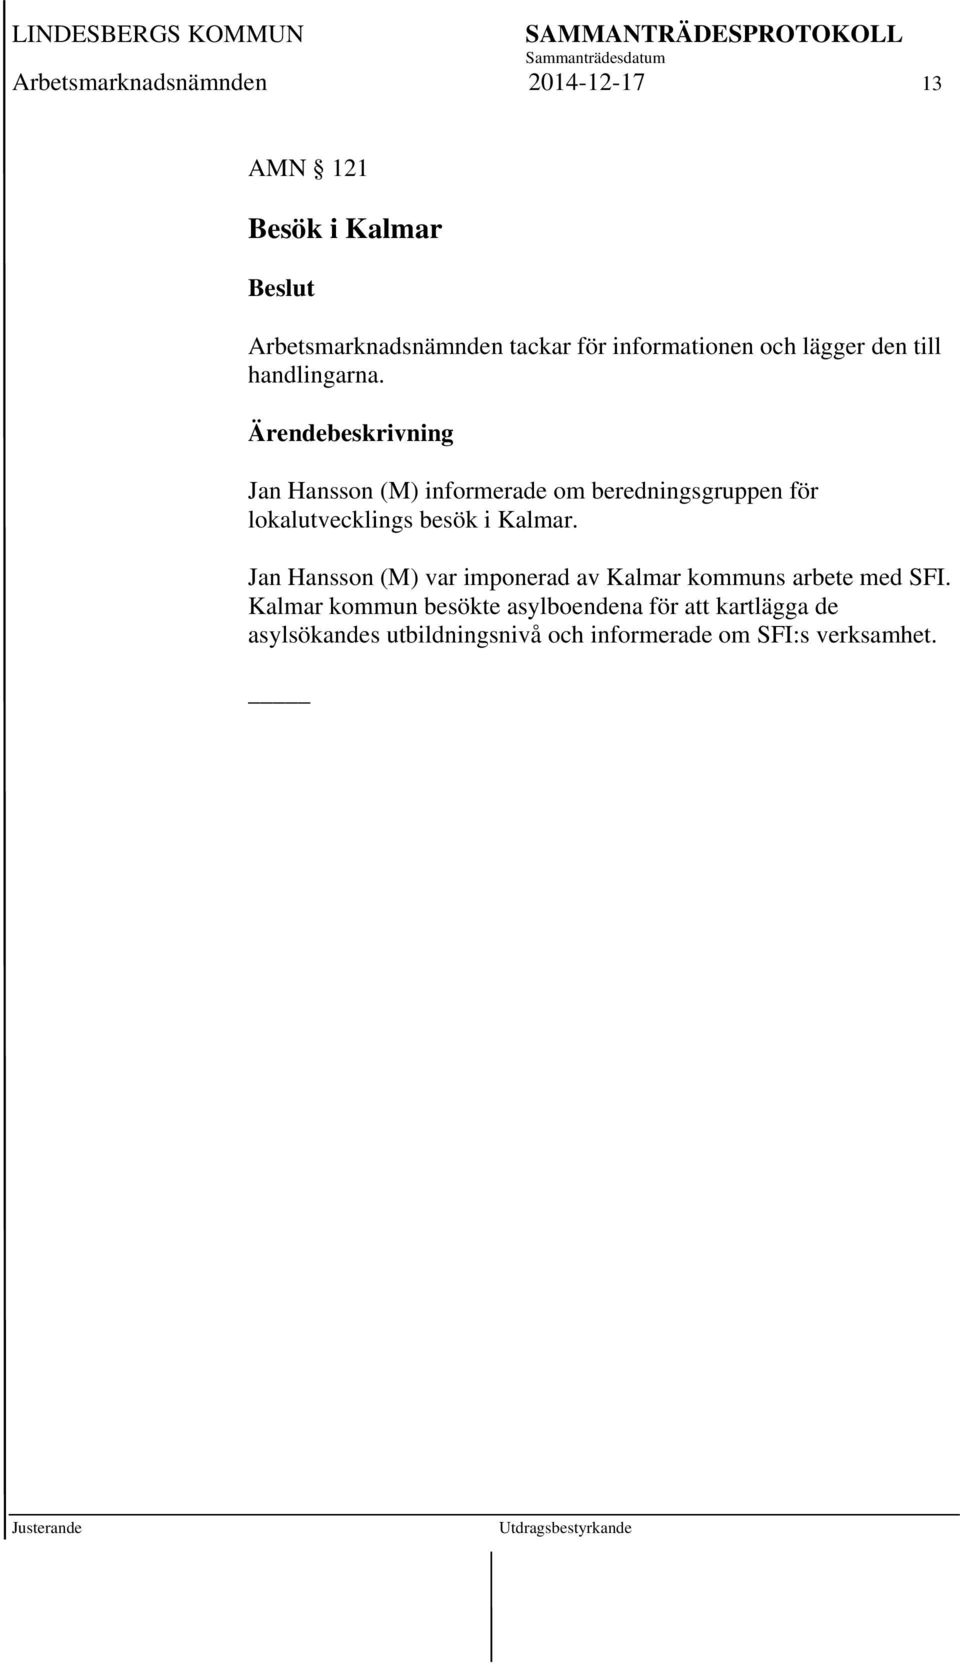 Ärendebeskrivning Jan Hansson (M) informerade om beredningsgruppen för lokalutvecklings besök i Kalmar.